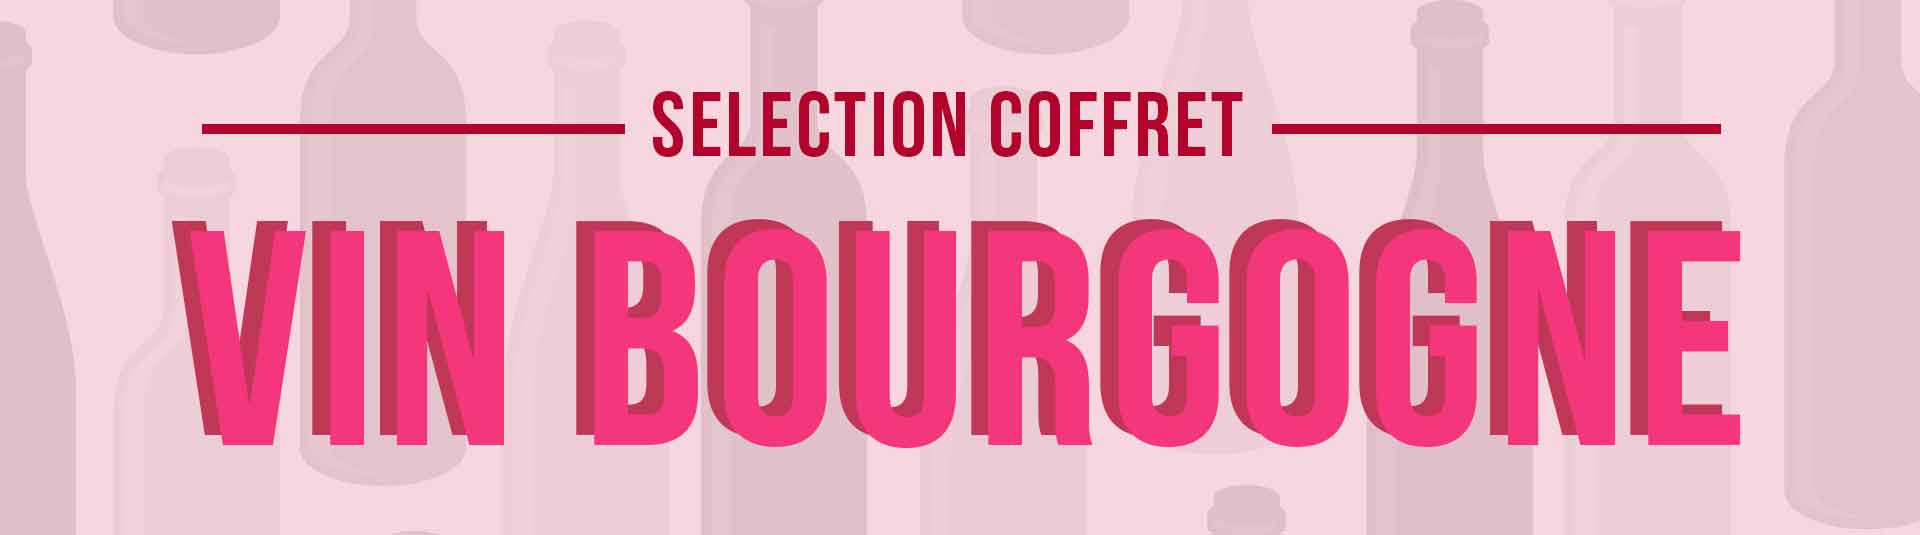 COFFRET VIN BOURGOGNE  Coffrets vins de Bourgogne et Magnums